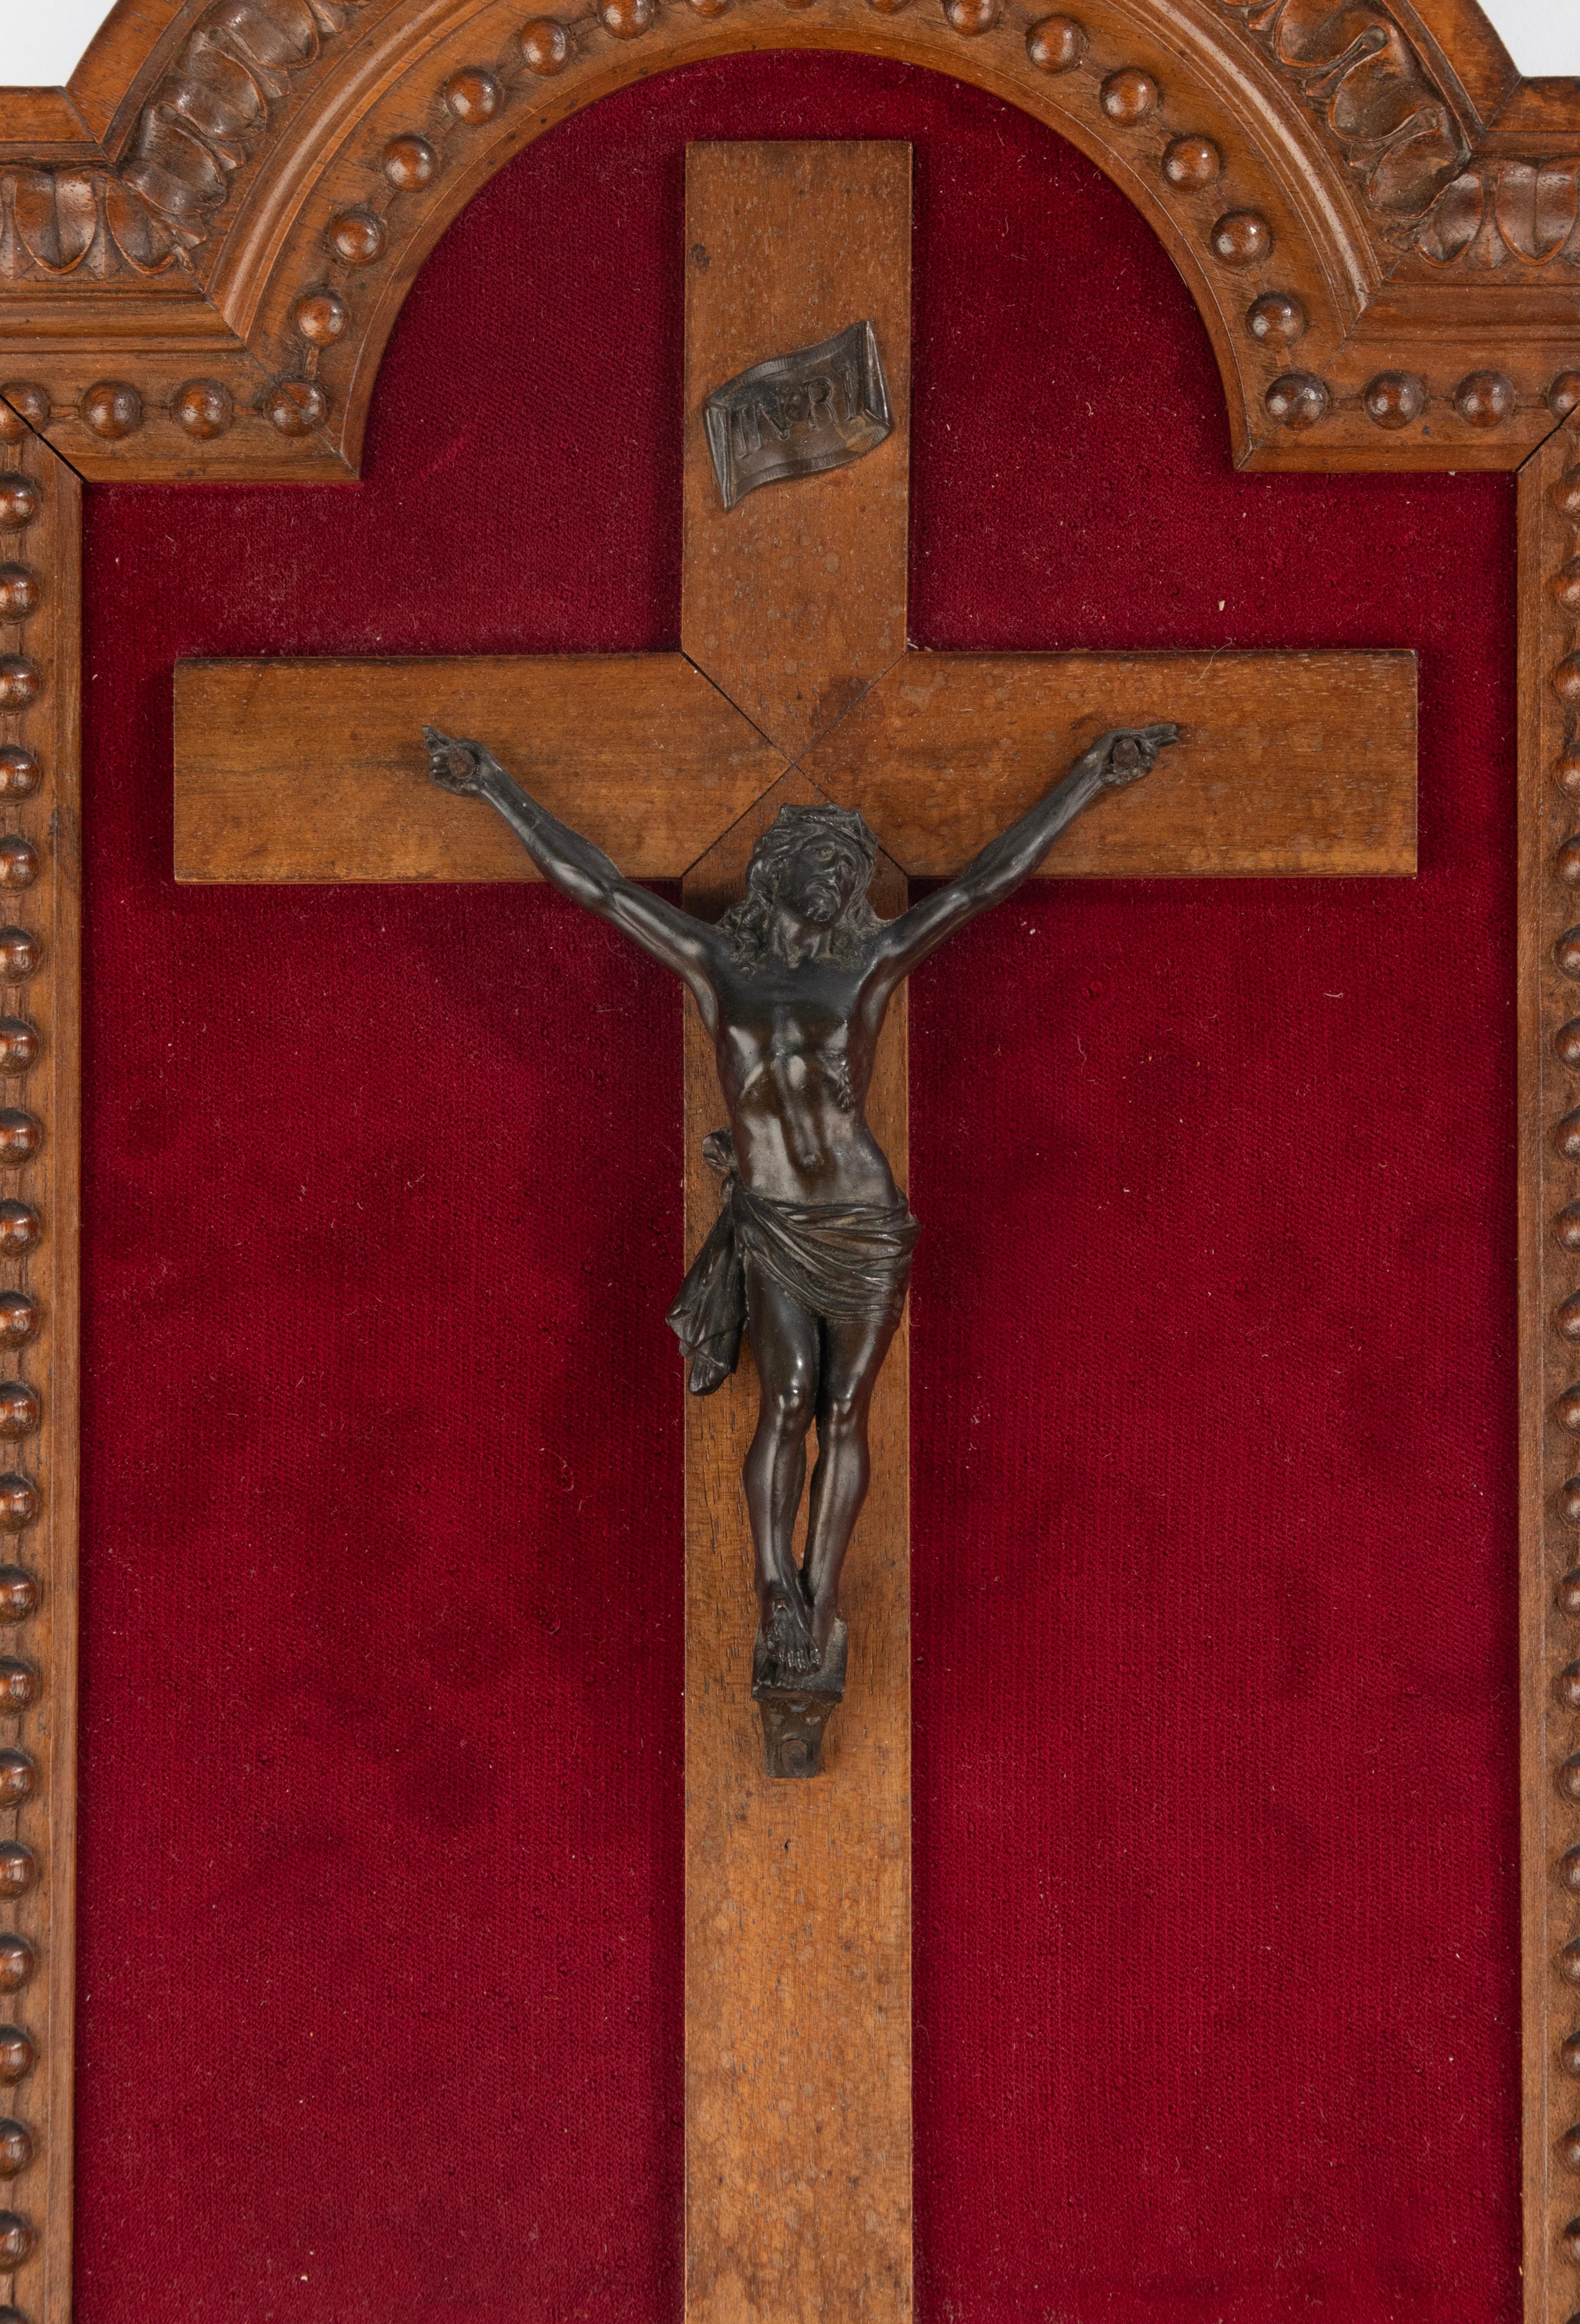 Eine schöne Bronzefigur von Jesus Christus, ein Fronleichnam. Es hängt an einem Kreuz aus Nussbaumholz, der Rahmen ist ebenfalls aus Nussbaumholz gefertigt und mit feinen Schnitzereien versehen. 
Dieses Stück stammt aus der Zeit um 1890. Sie ist in